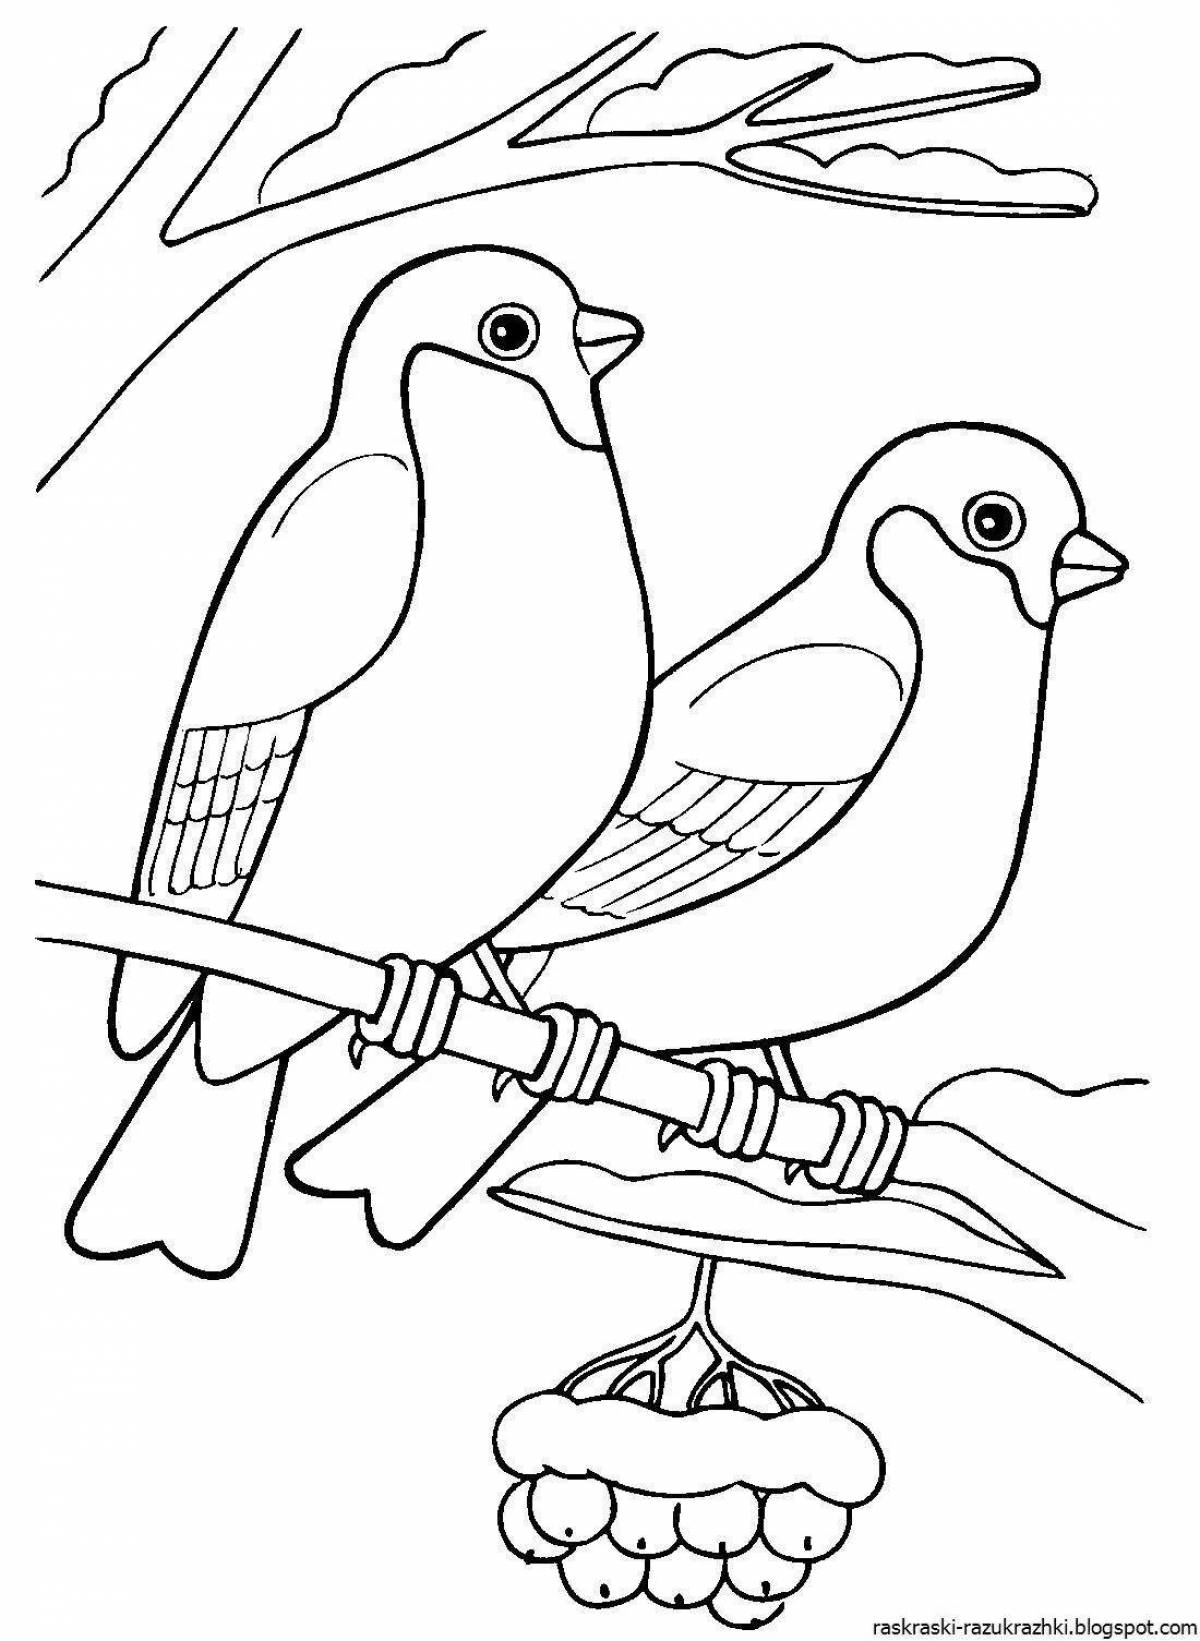 Раскраска экзотические зимующие птицы для детей 2-3 лет